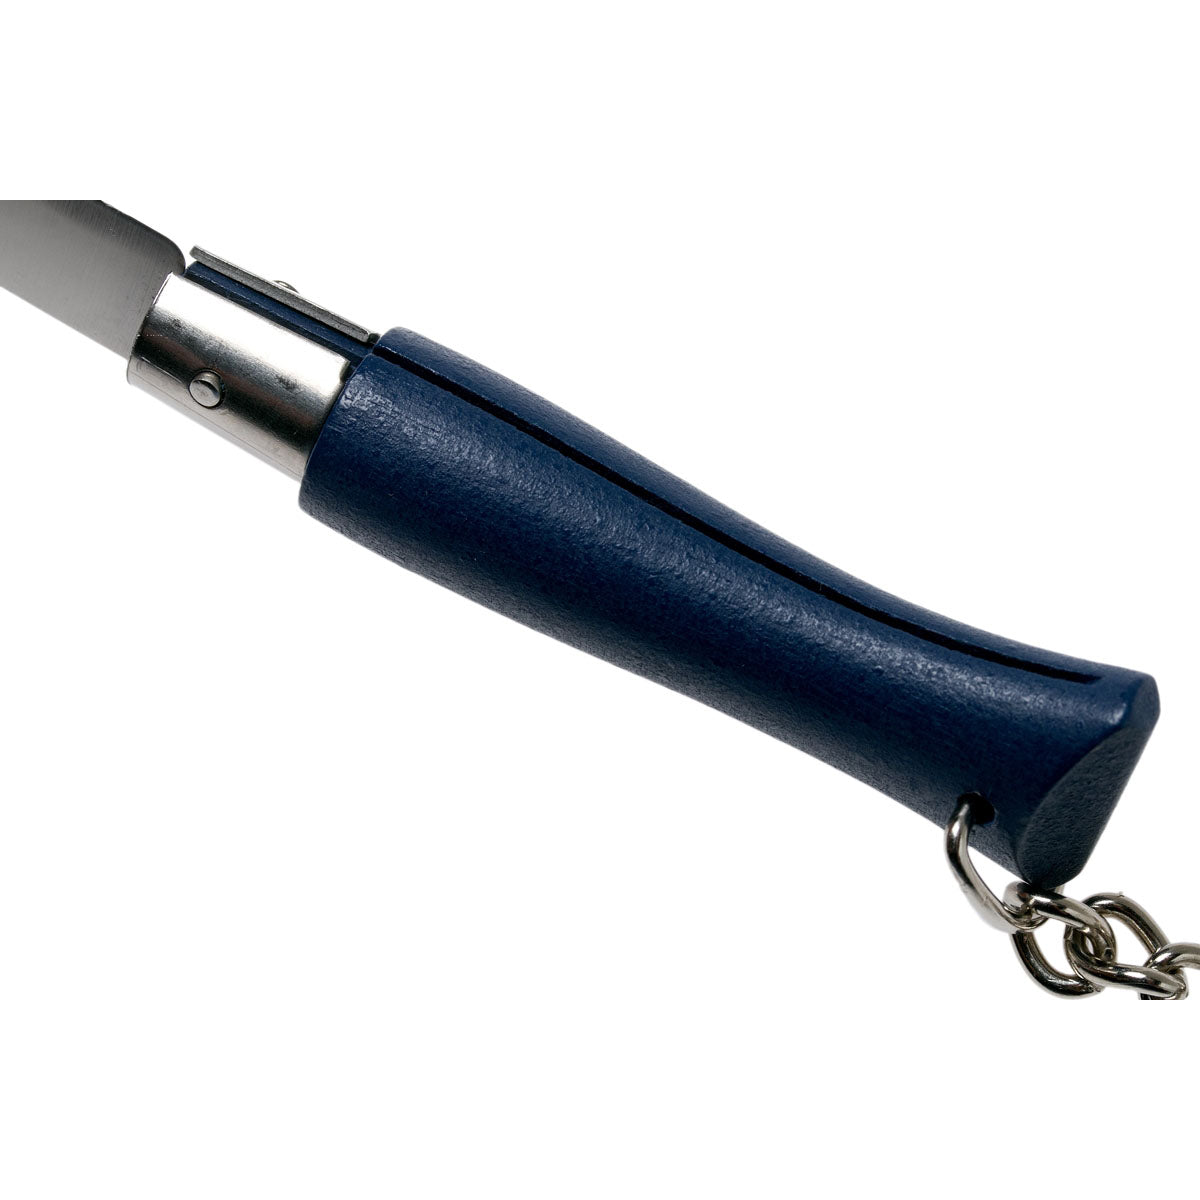 Opinel Key ring pocket knife Blue N°04